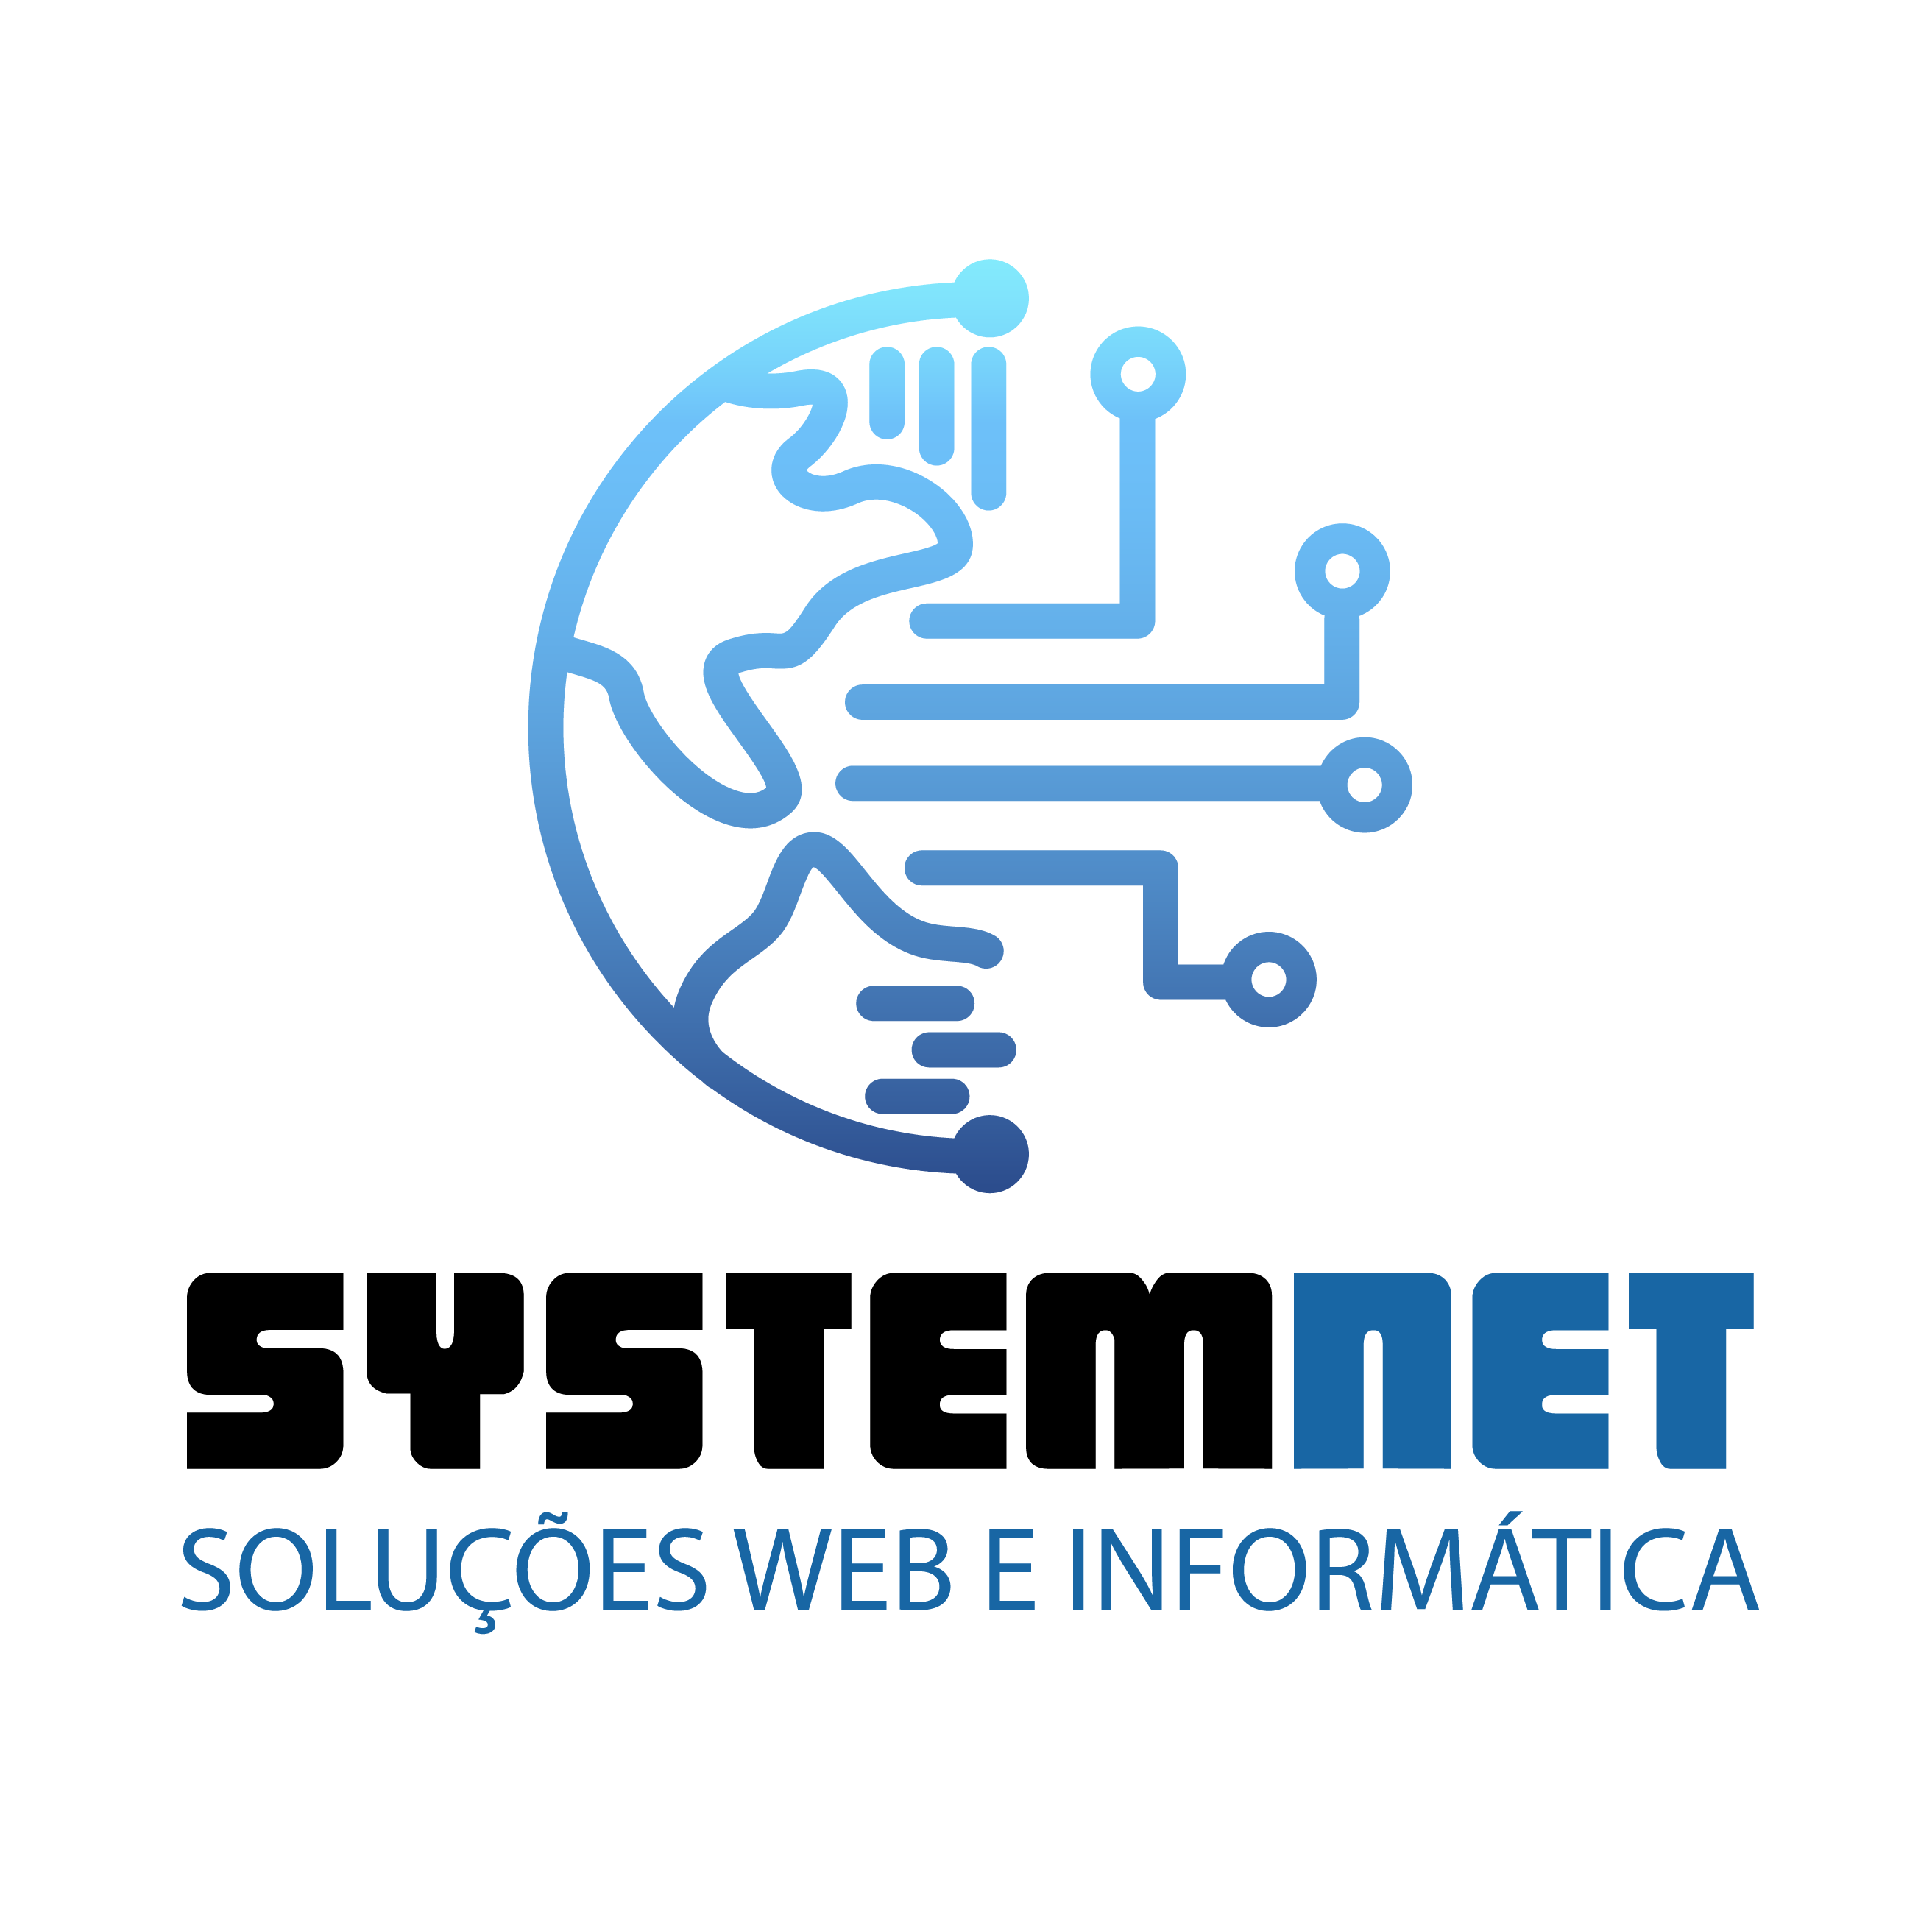 SYSTEM NET soluções web e informática